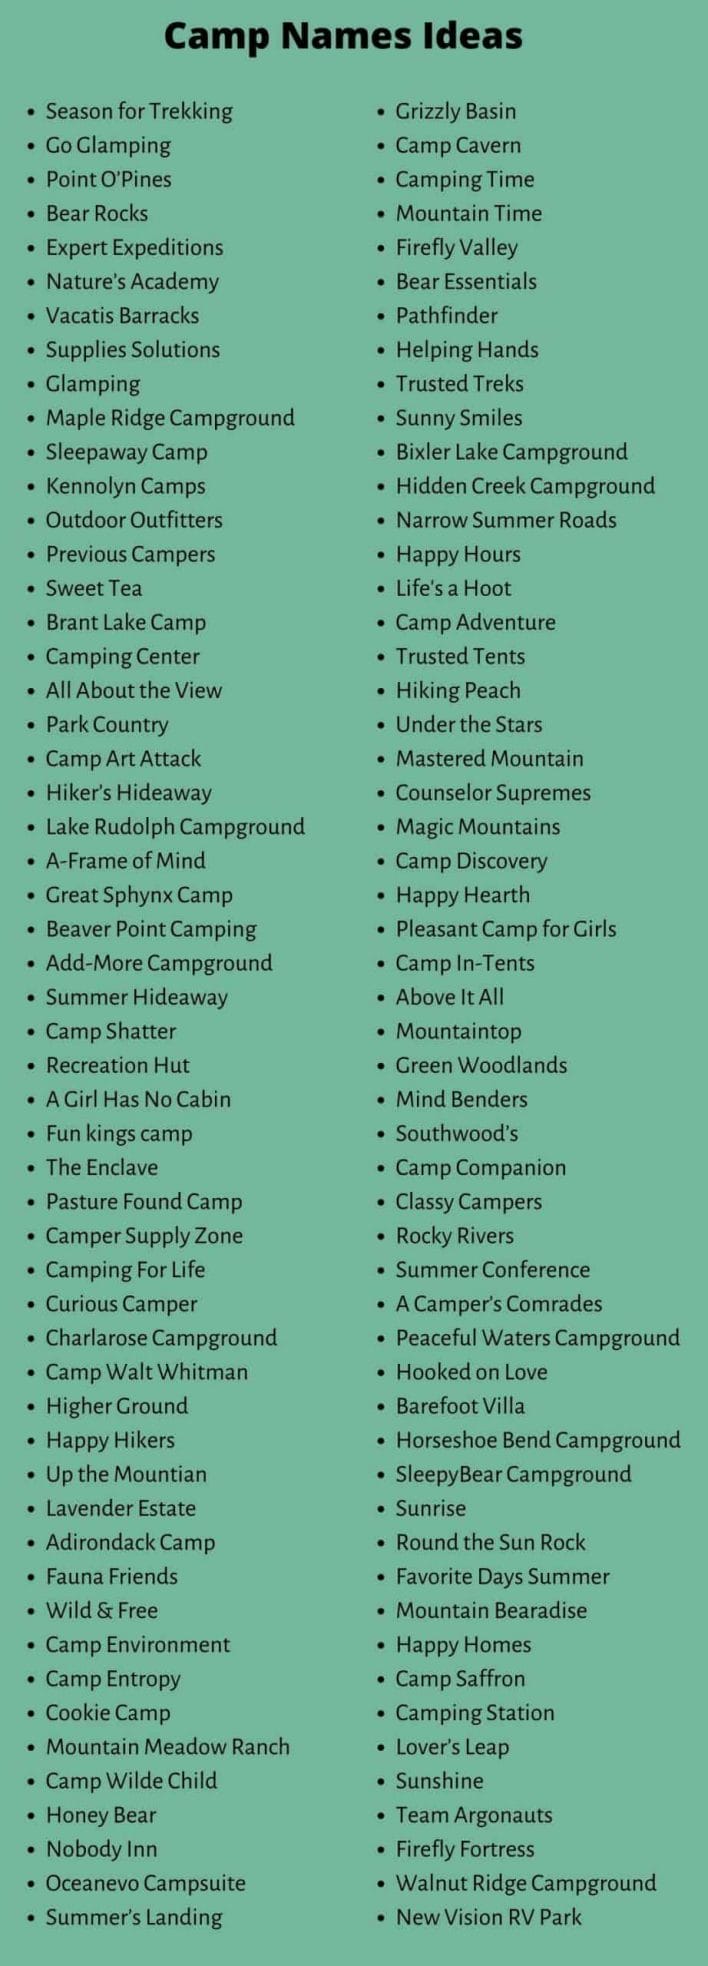 Camp Names 